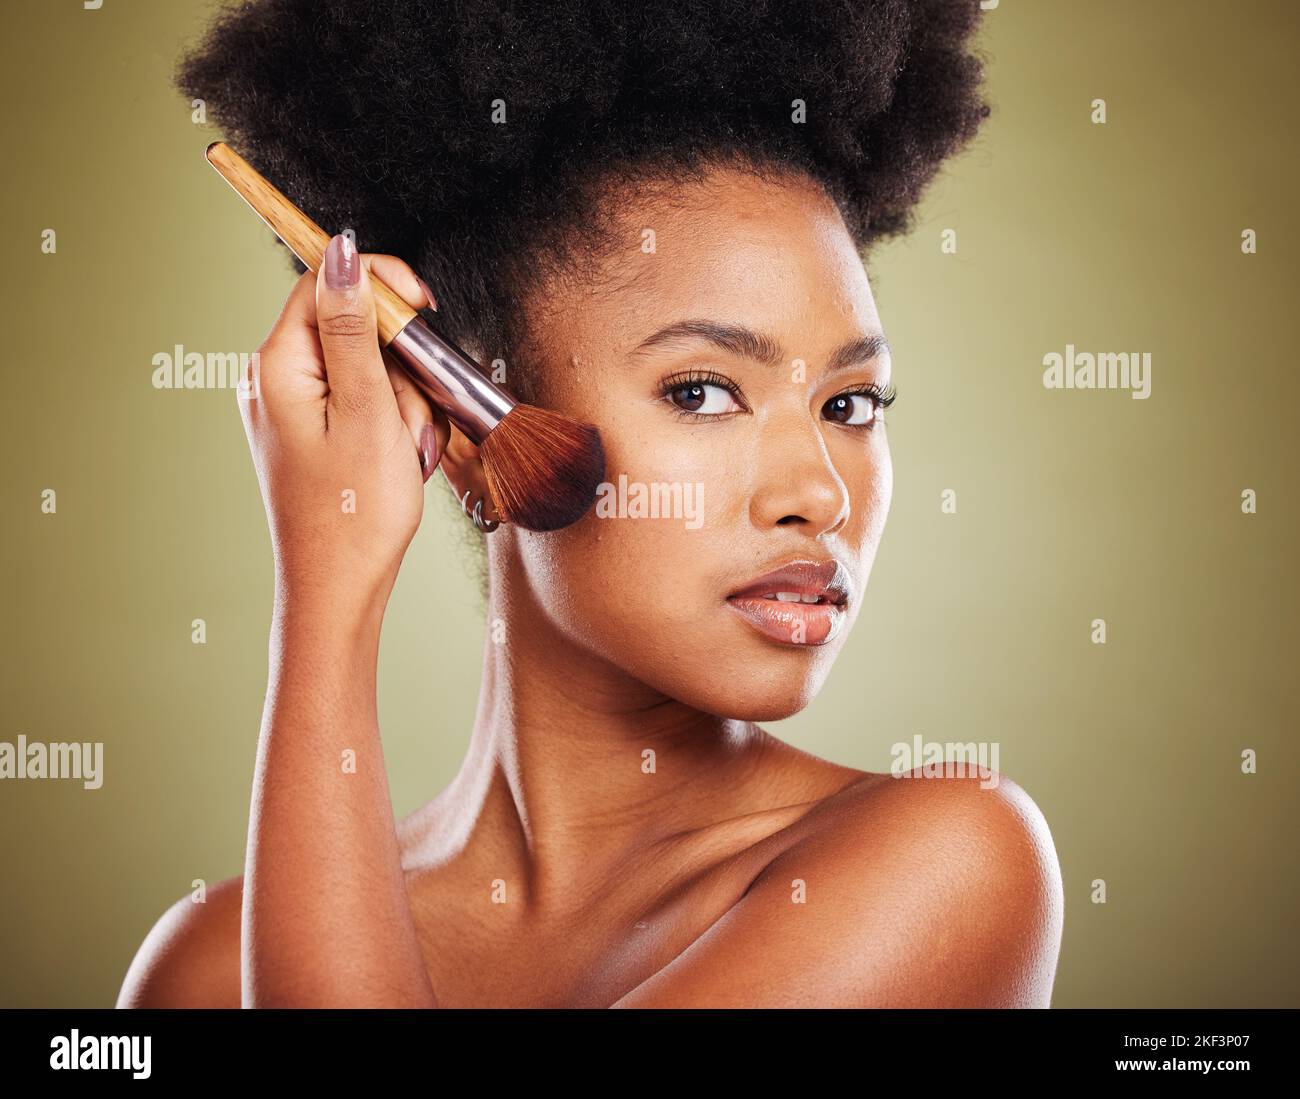 Cepillo de maquillaje, mujer negra y belleza, cosméticos y pólvora, base y producto para brillo, brillo y cara sobre fondo de estudio. Retrato de Foto de stock